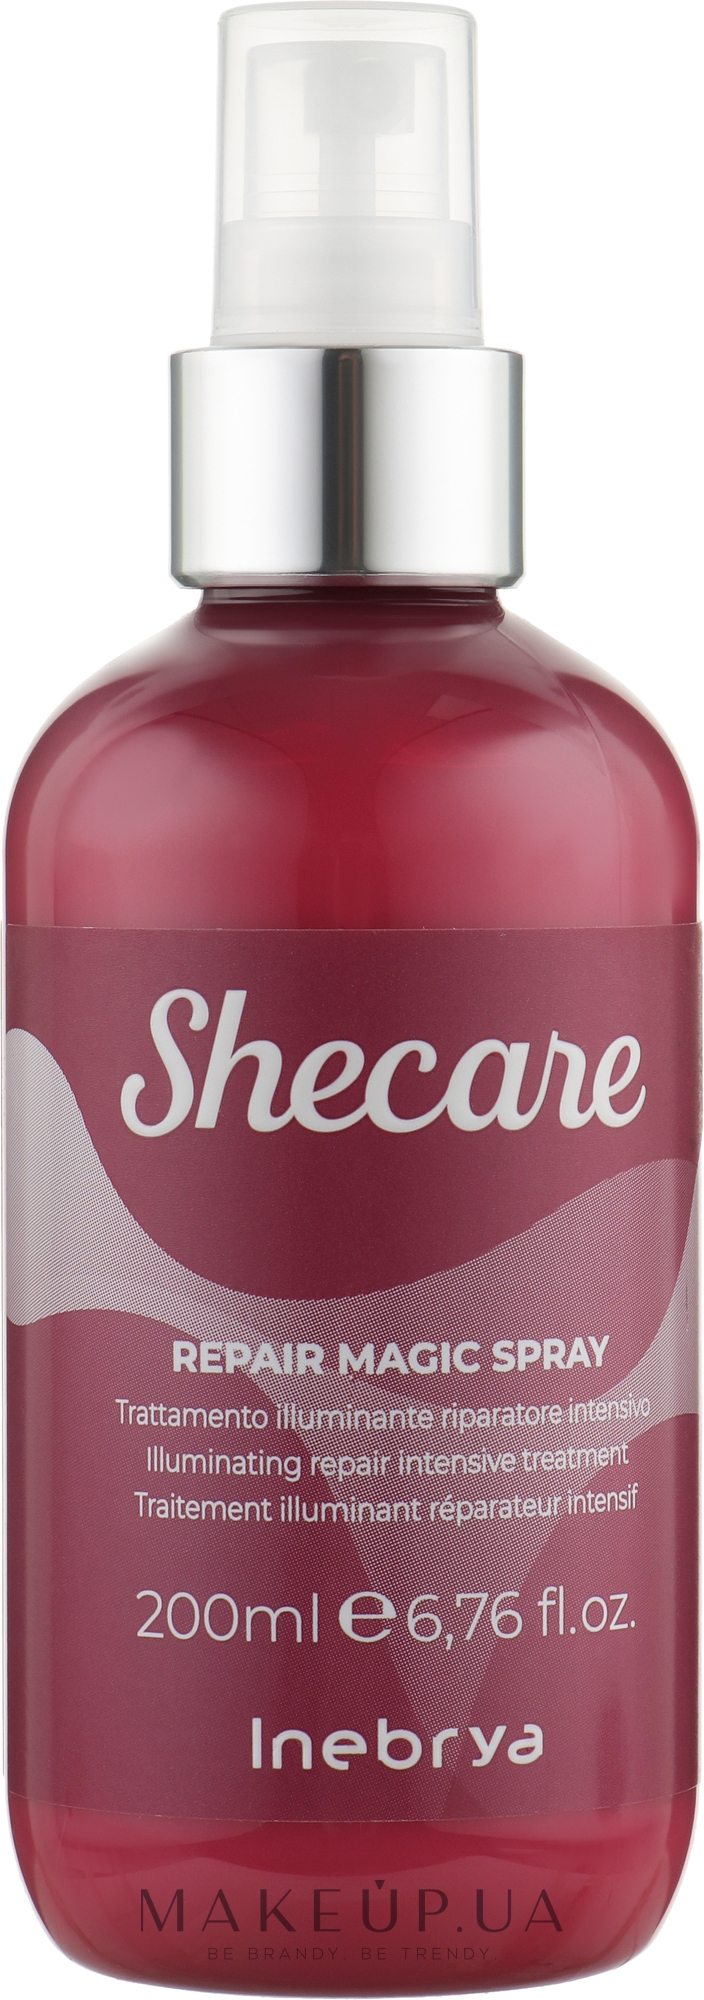 Відновлювальний магічний спрей - Inebrya She Care Repair Magic Spray — фото 200ml